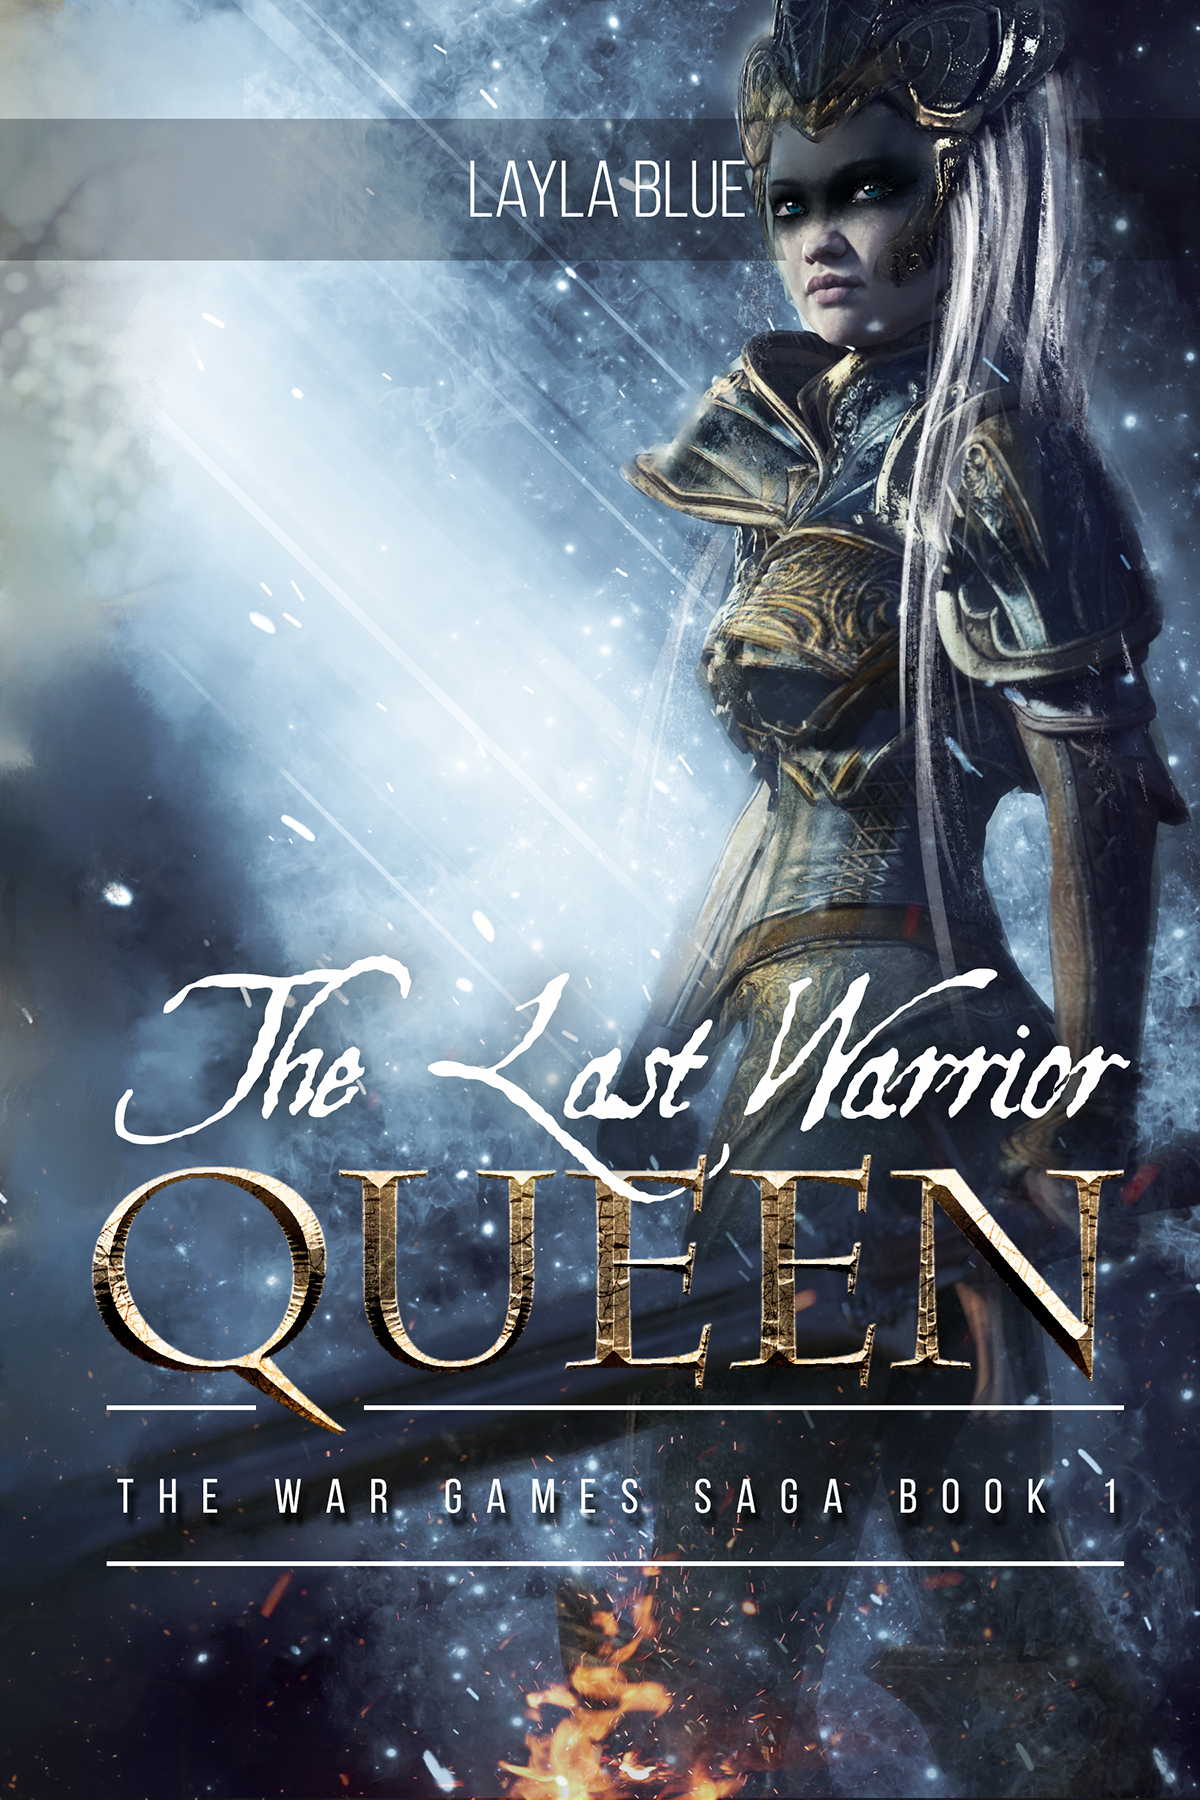 Queen art warrior fantasy Barbarian Queen